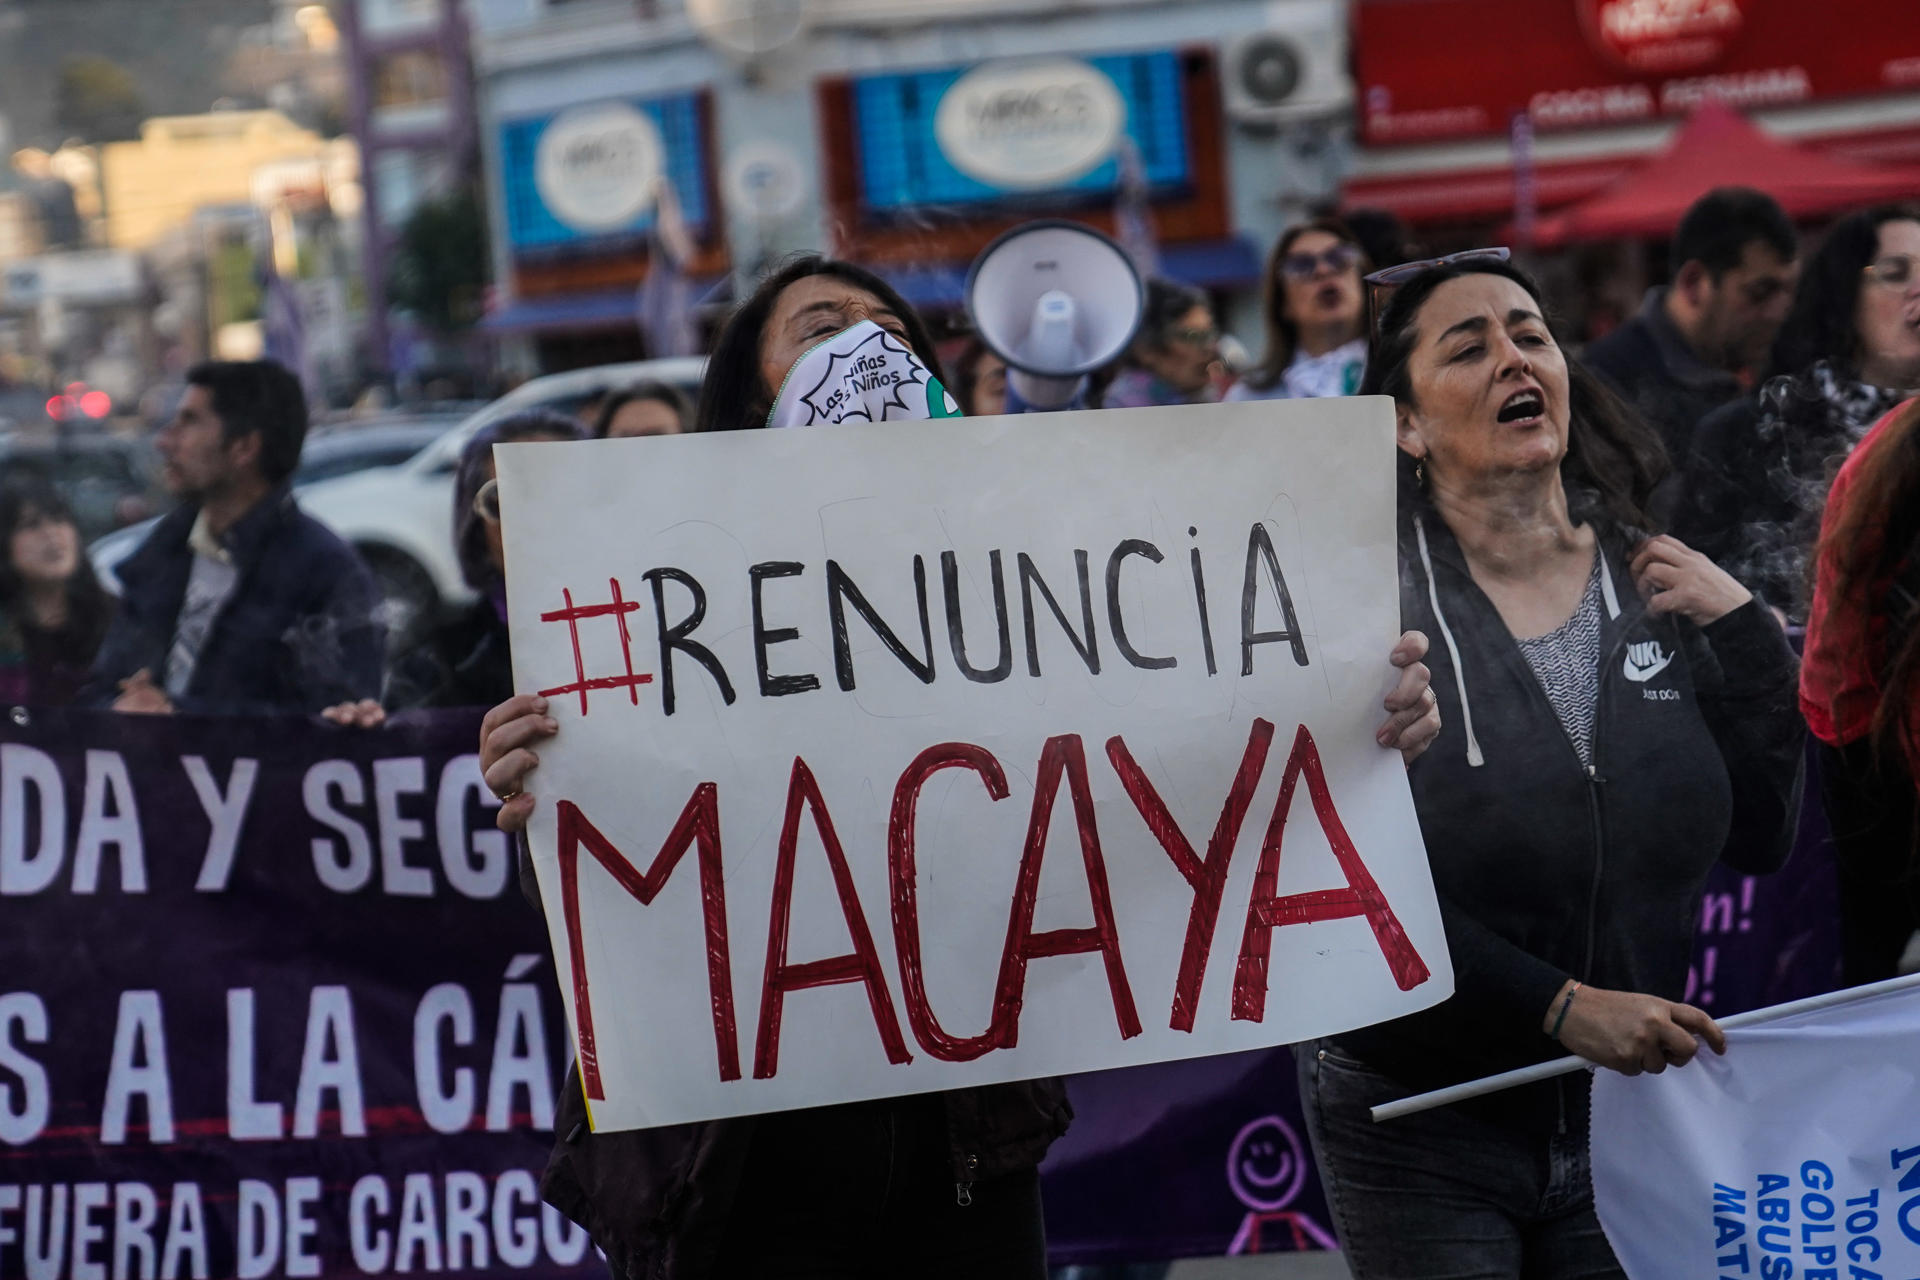 Personas pertenecientes a distintas agrupaciones feministas participan de una manifestación a las afueras del Congreso Nacional para pedir la renuncia del senador conservador Javier Macaya, este miércoles, en Valparaíso (Chile). EFE/ Cristobal Basaure